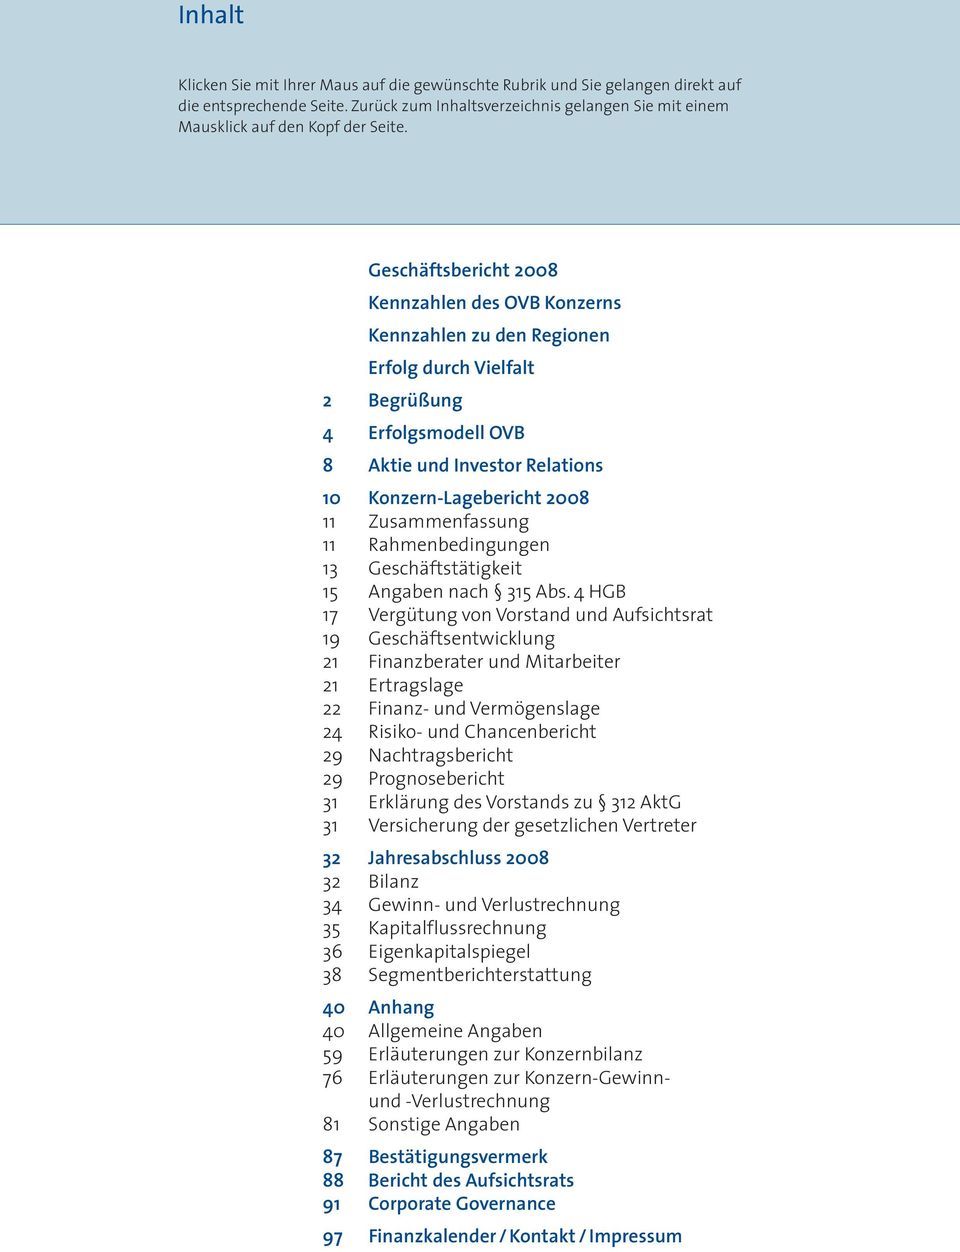 Zusammenfassung 11 Rahmenbedingungen 13 Geschäftstätigkeit 15 Angaben nach 315 Abs.